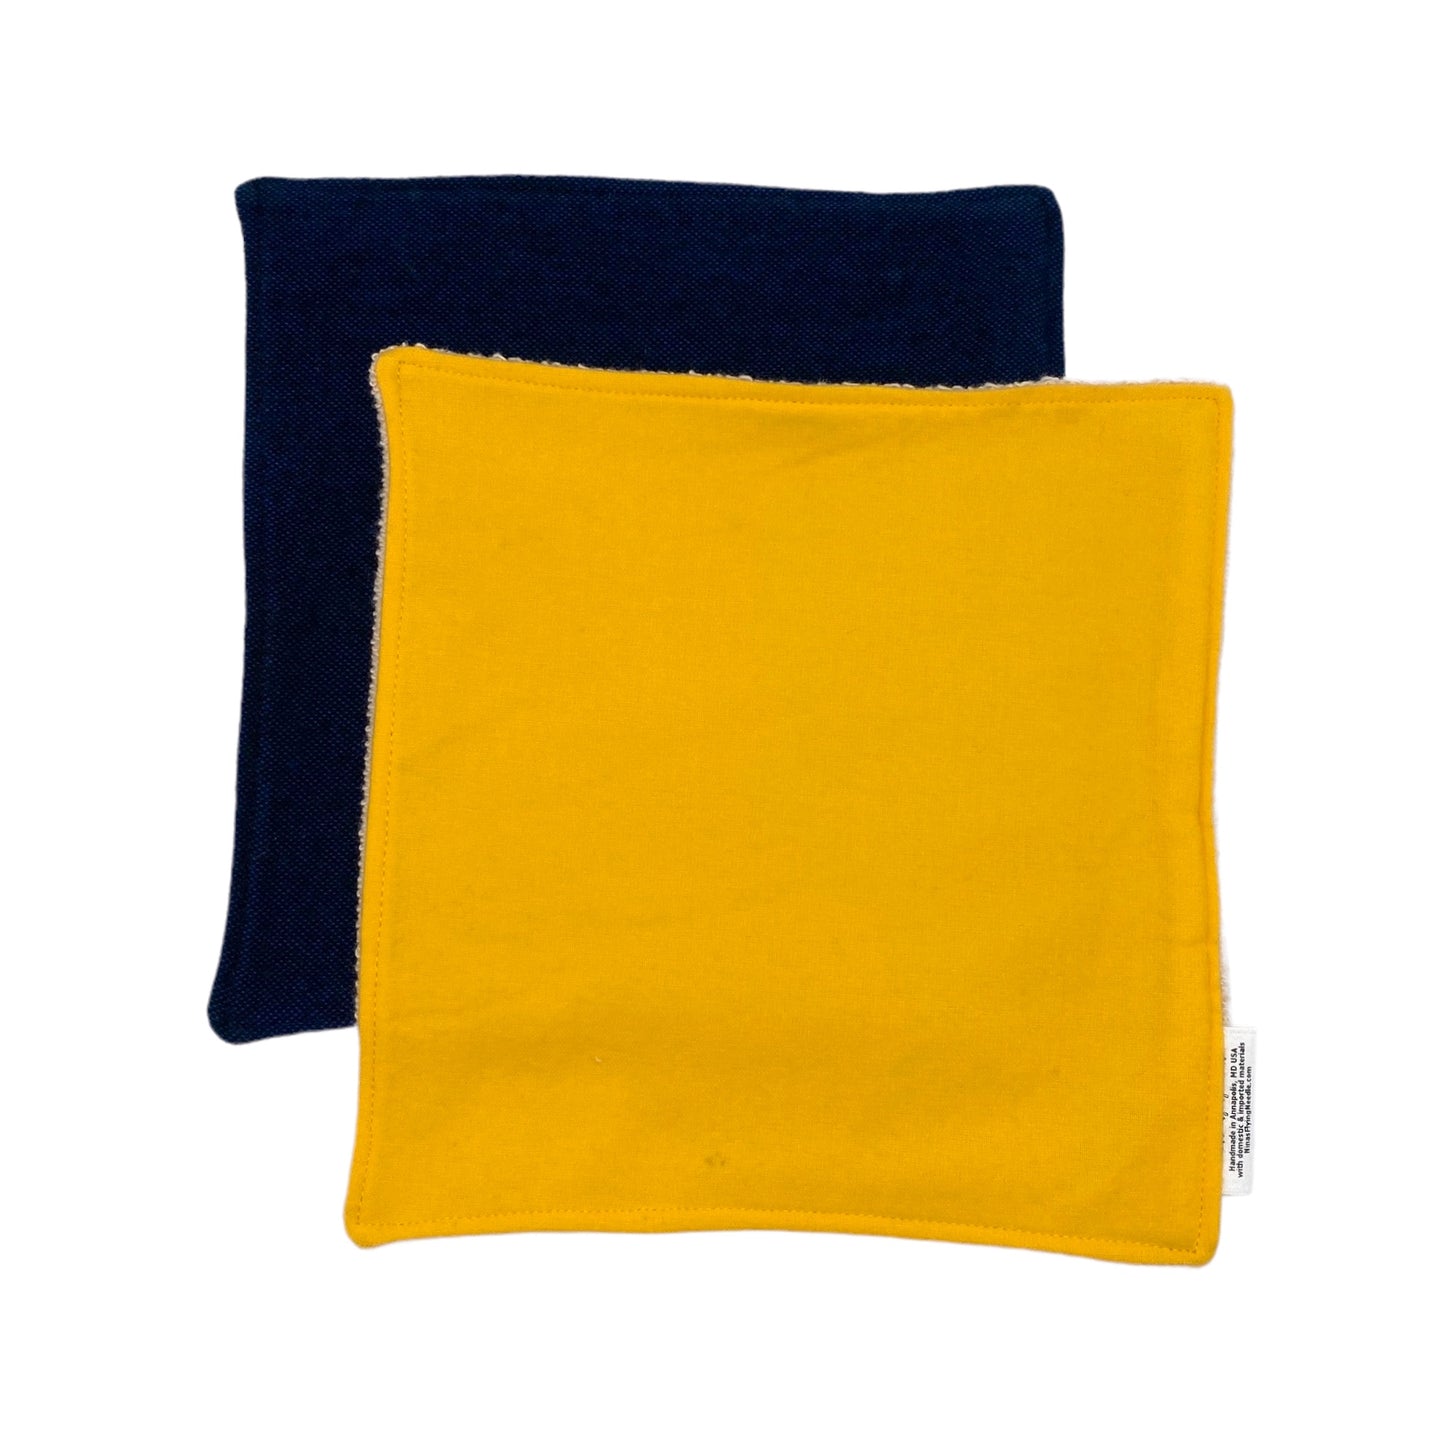 Wash Cloth - Regular - Solids - Herringbone Navy and Yellow